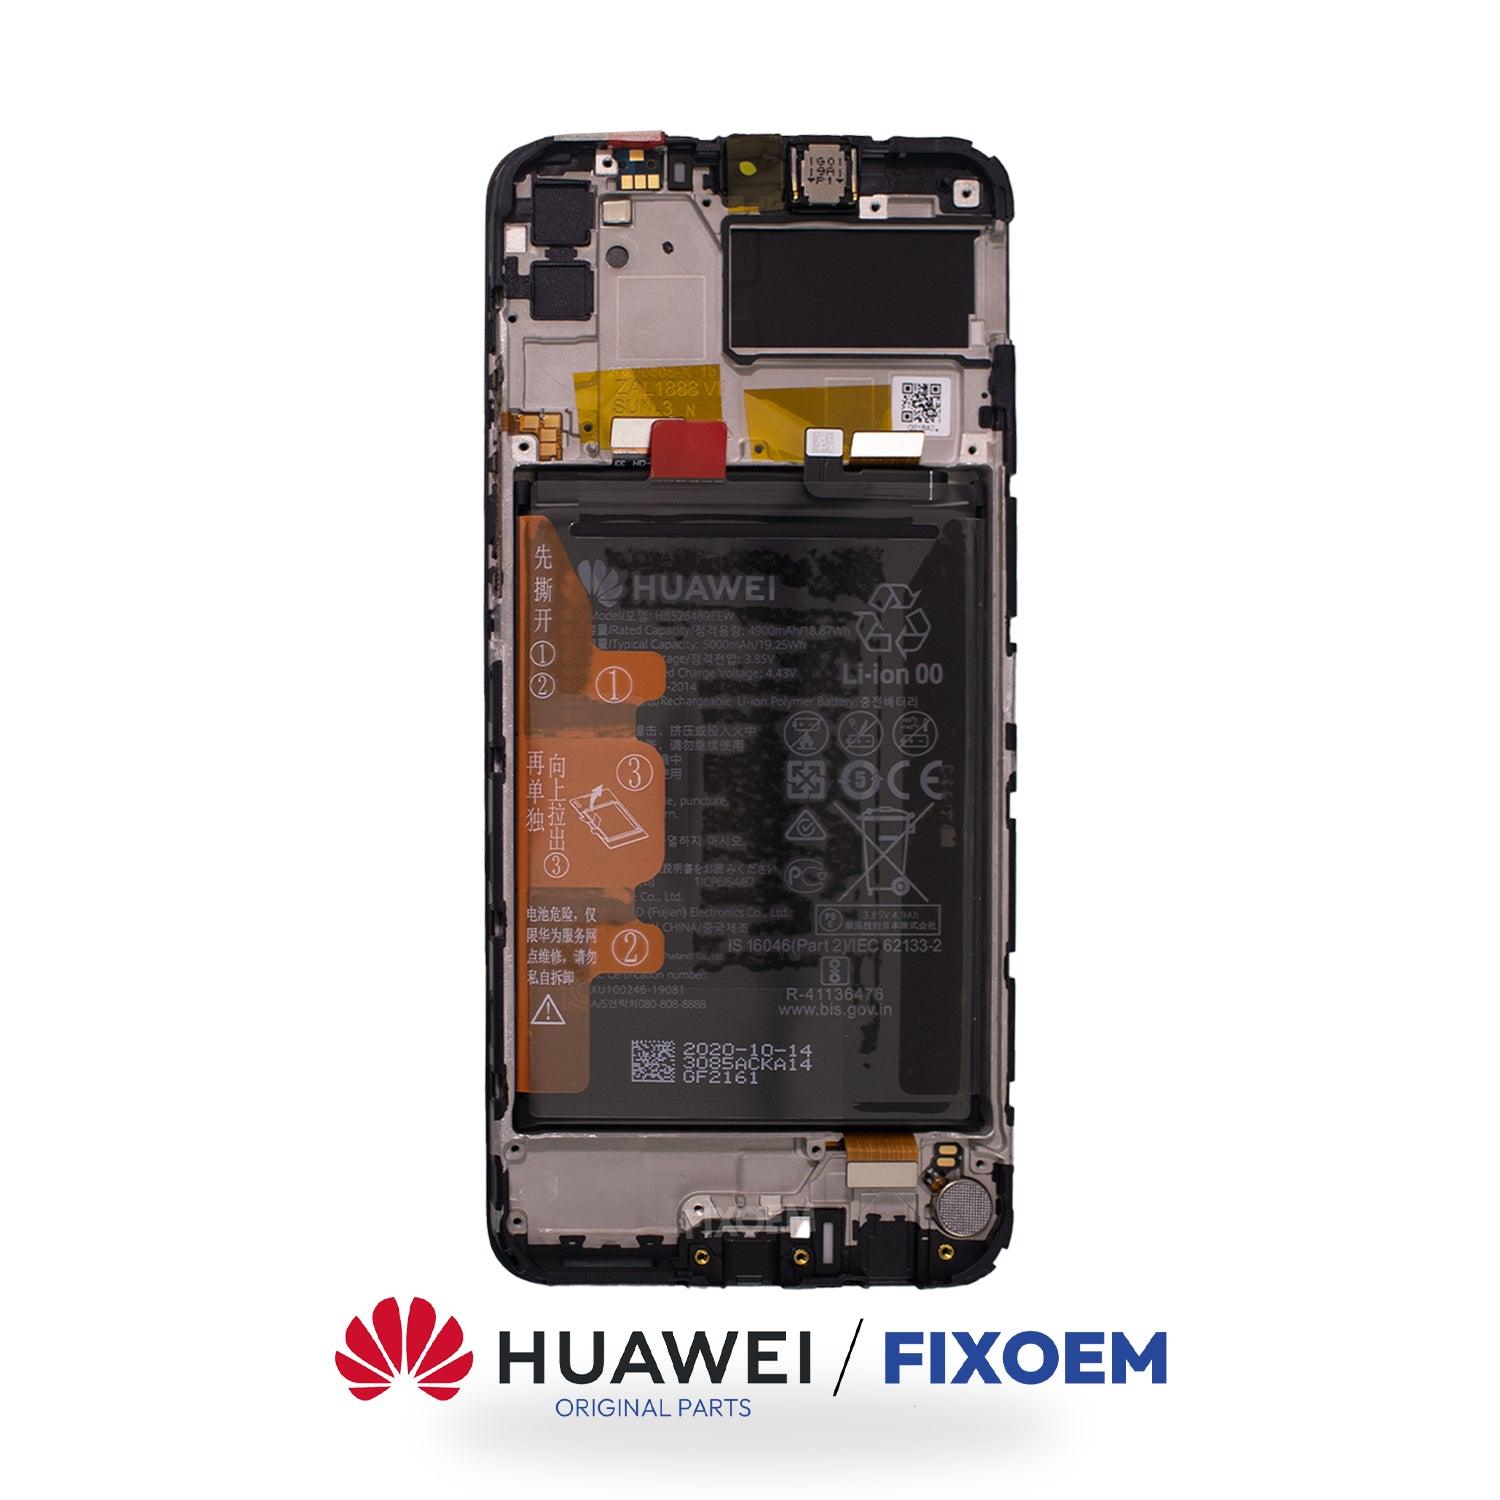 Display Huawei Y6P Ips Med-Lx9 Med - Lx9n 2020 |+2,000 reseñas 4.8/5 ⭐